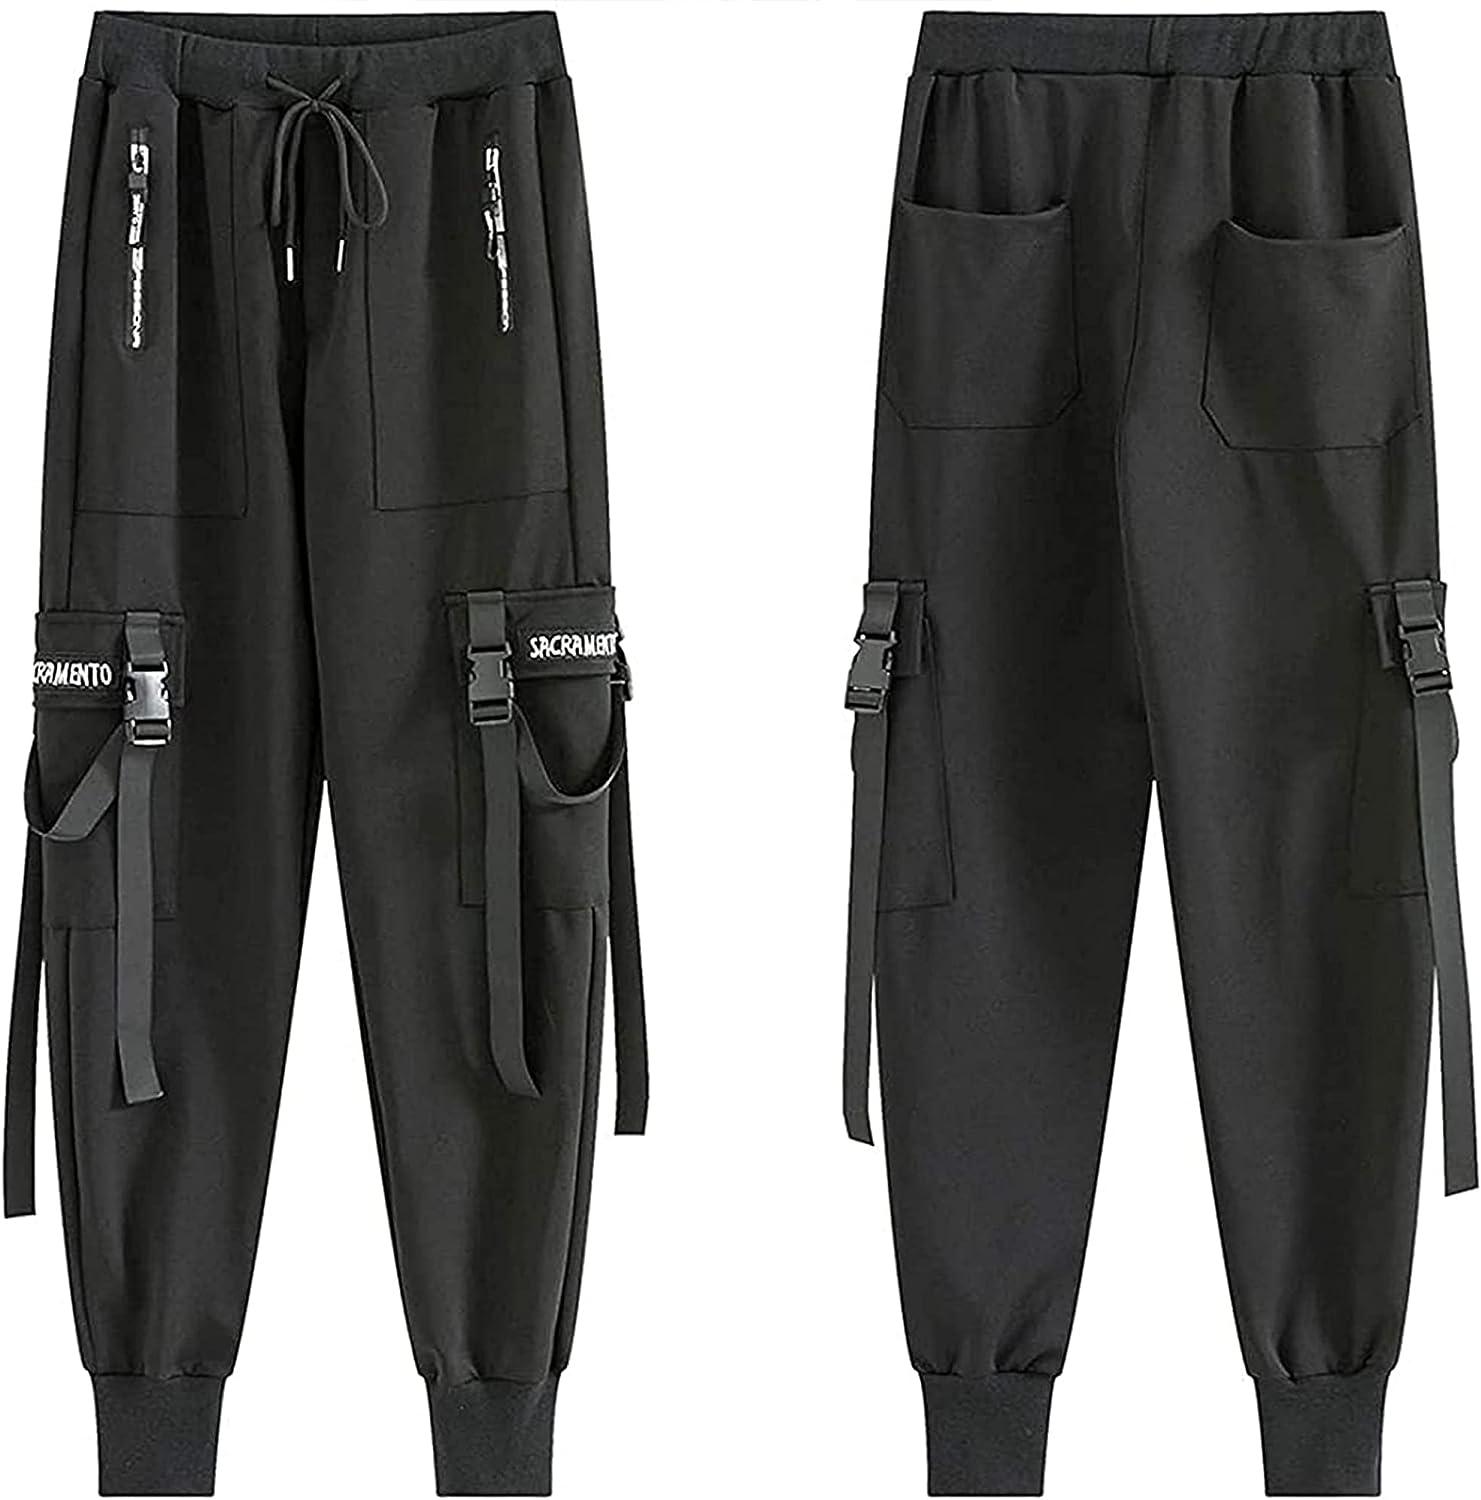 New Men's Side Pockets Cargo Pants Black Hip Hop Harem Pants